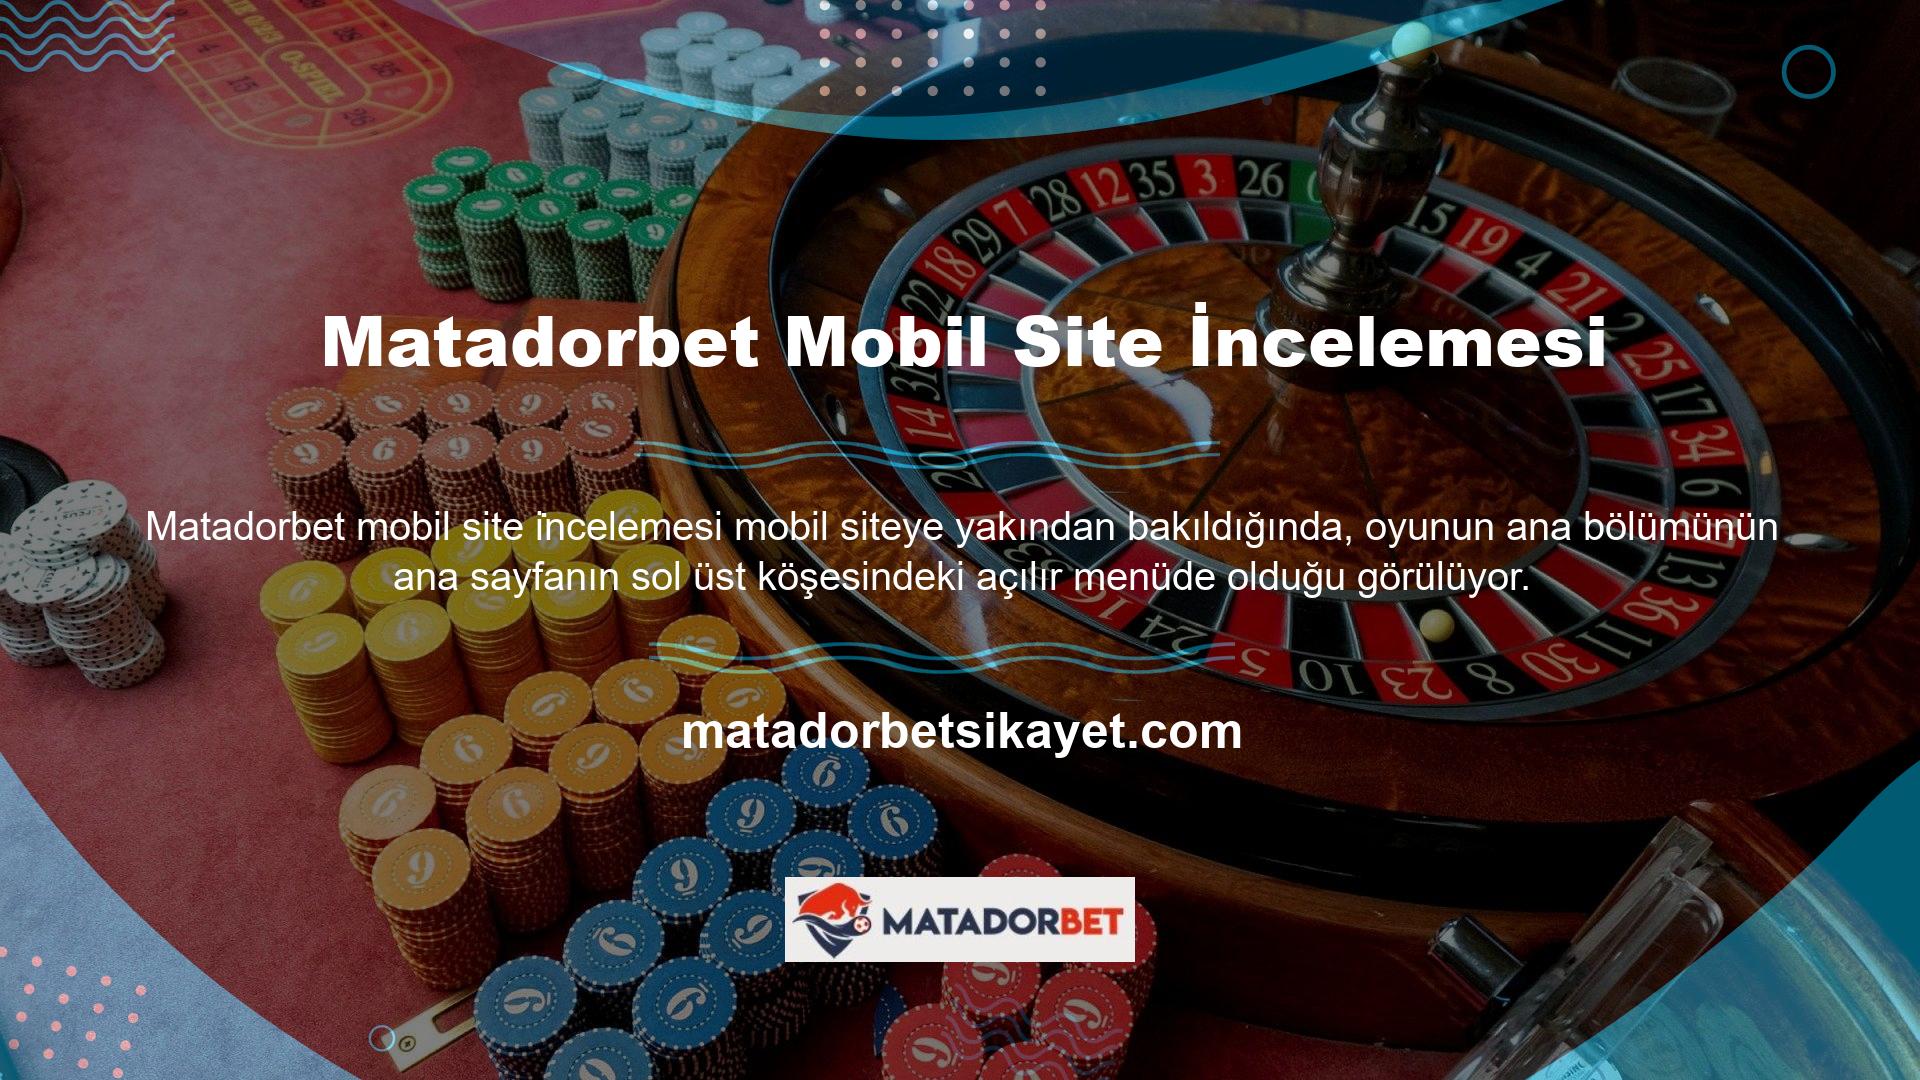 Matadorbet mobil site ana sayfasının sağ üst köşesinde Türkçe, İngilizce, Almanca ve Fransızca dillerini destekleyen hızlı bağlantı çubuğu bulunmaktadır